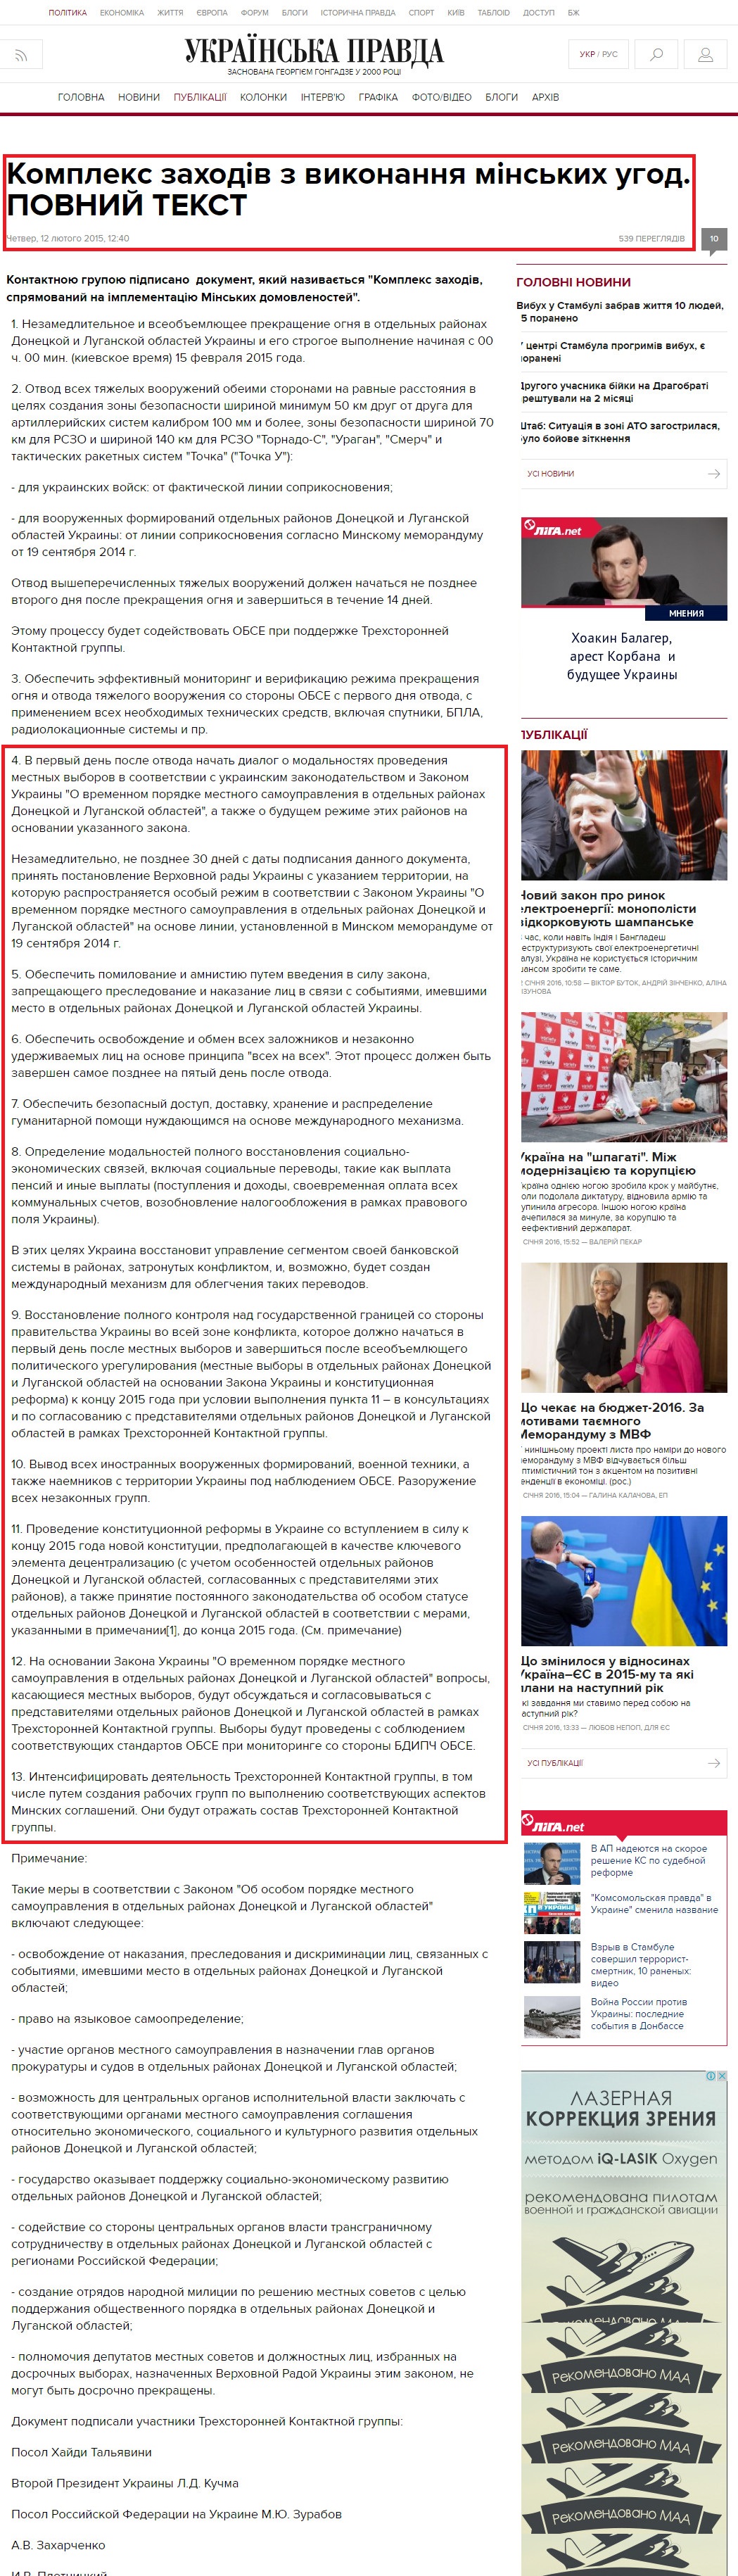 http://www.pravda.com.ua/articles/2015/02/12/7058327/